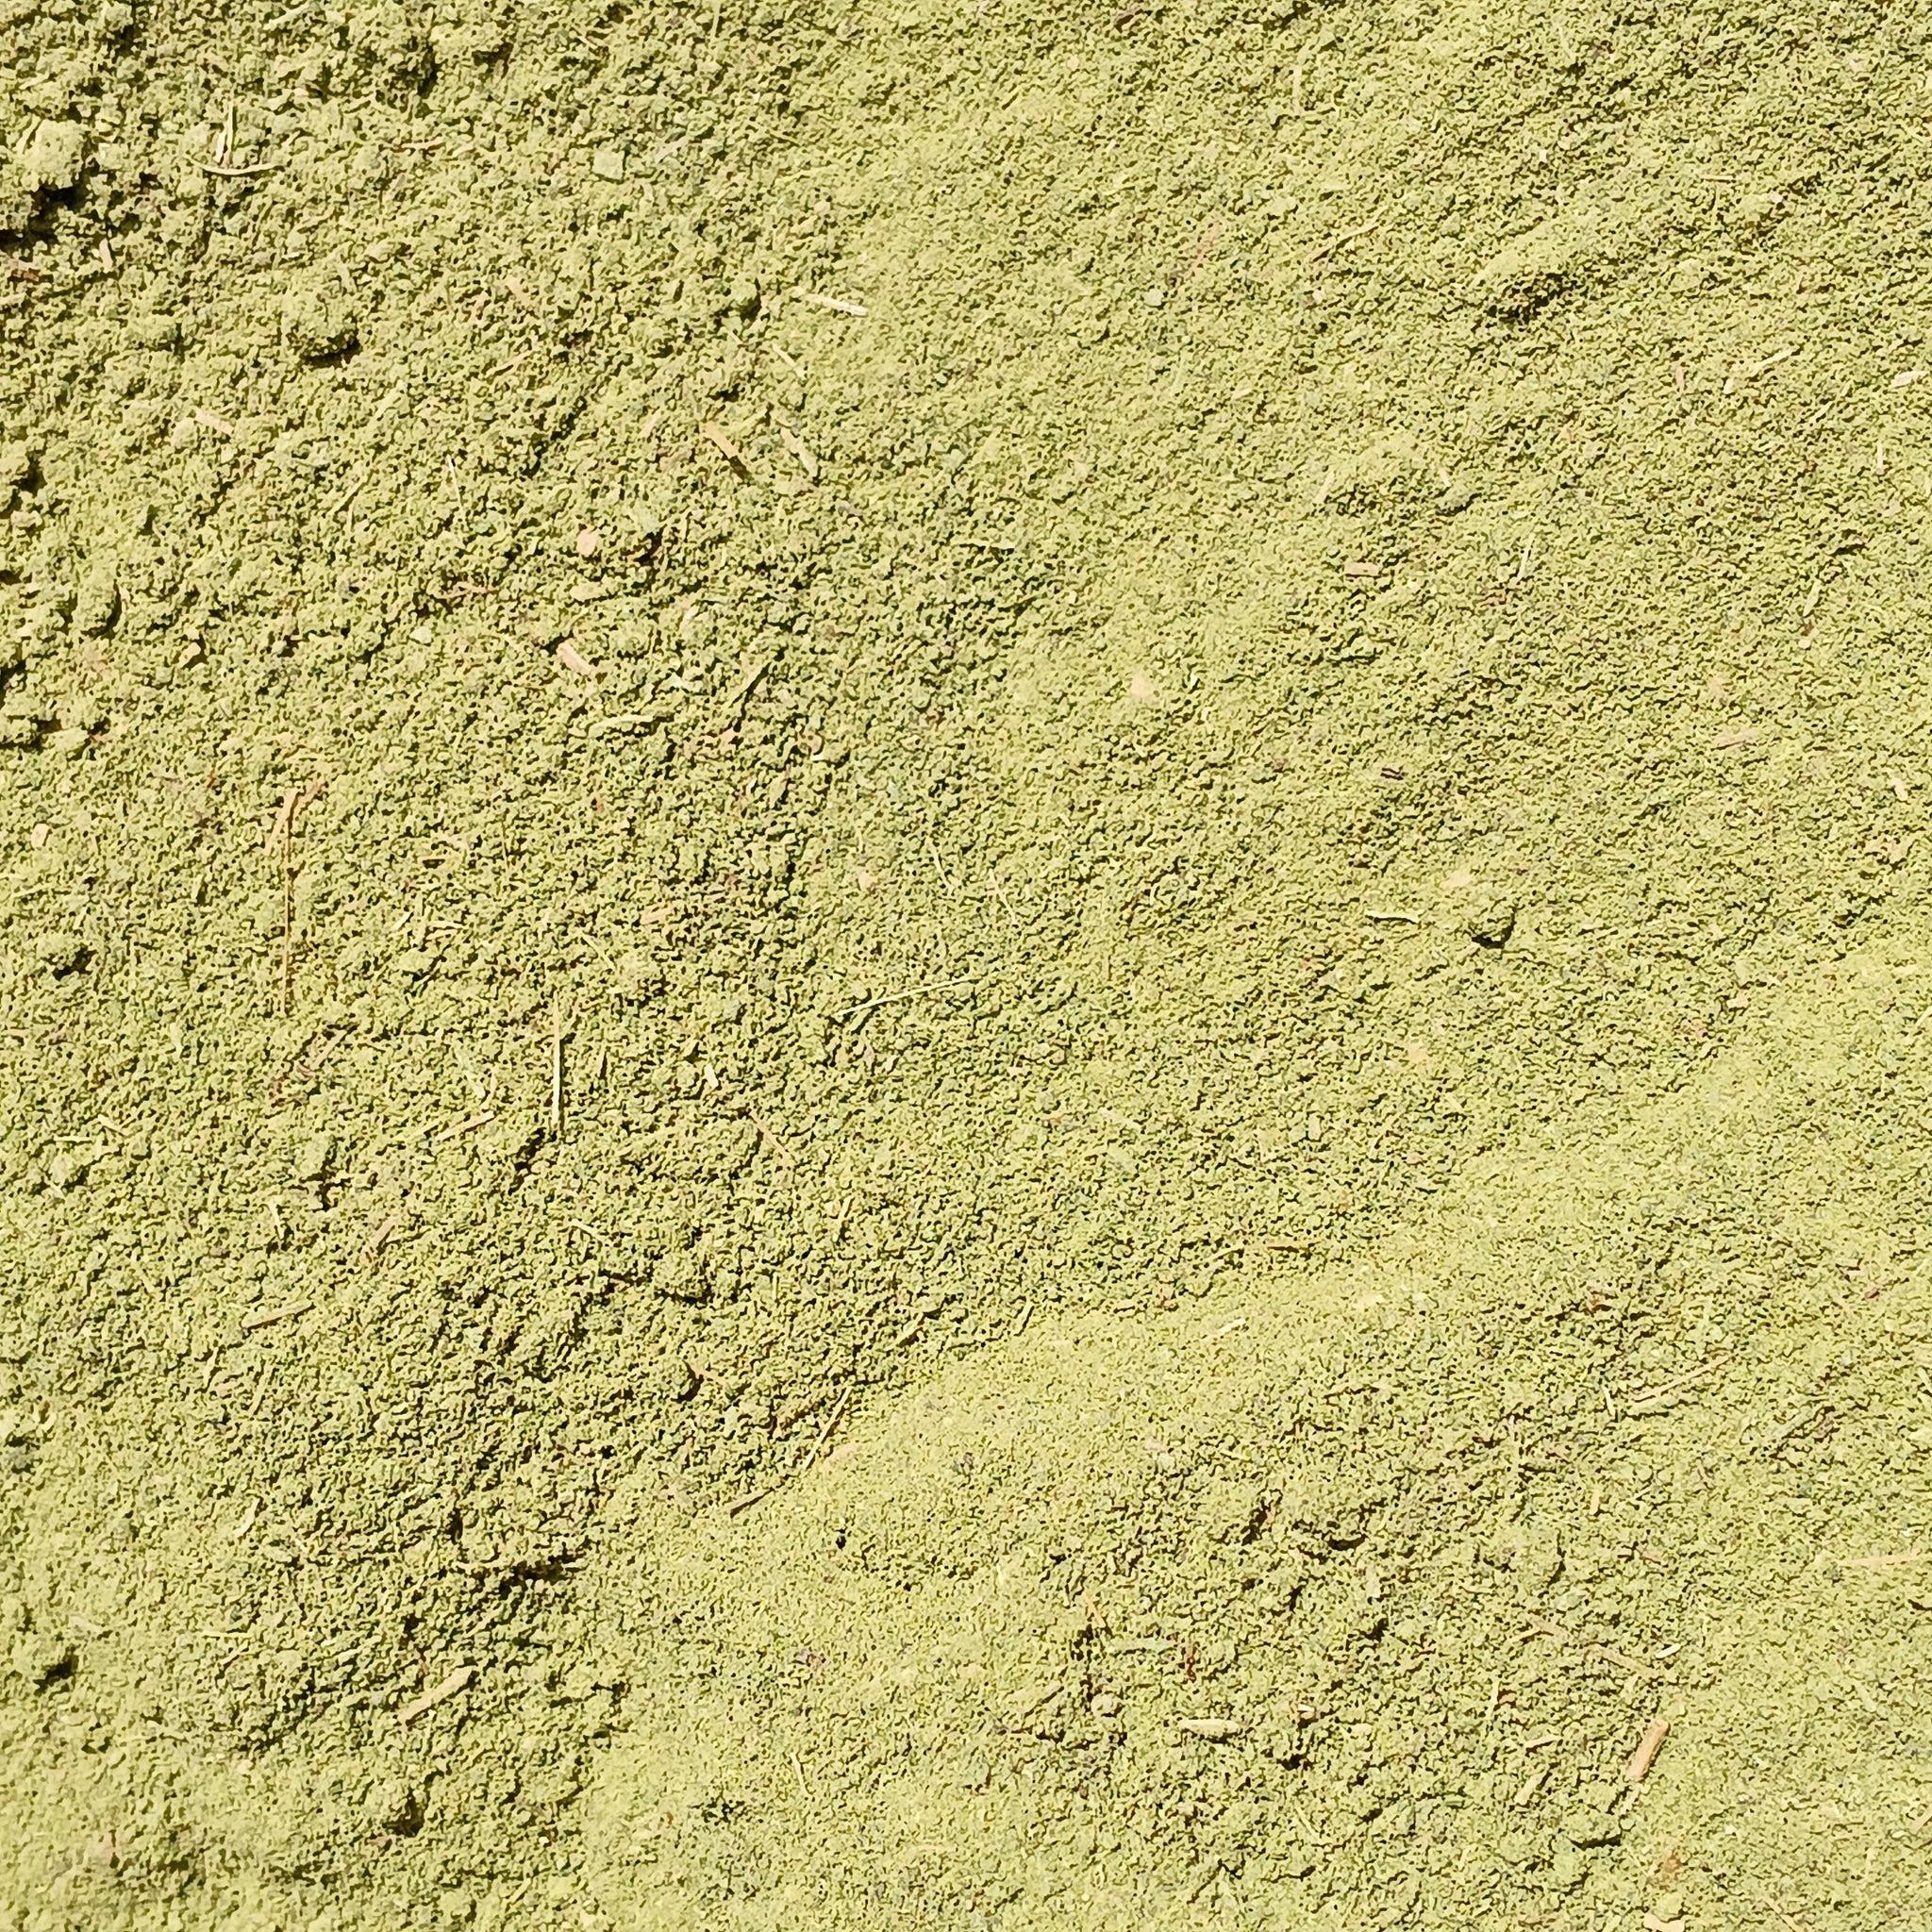 Pulver aus Stevia-Blättern